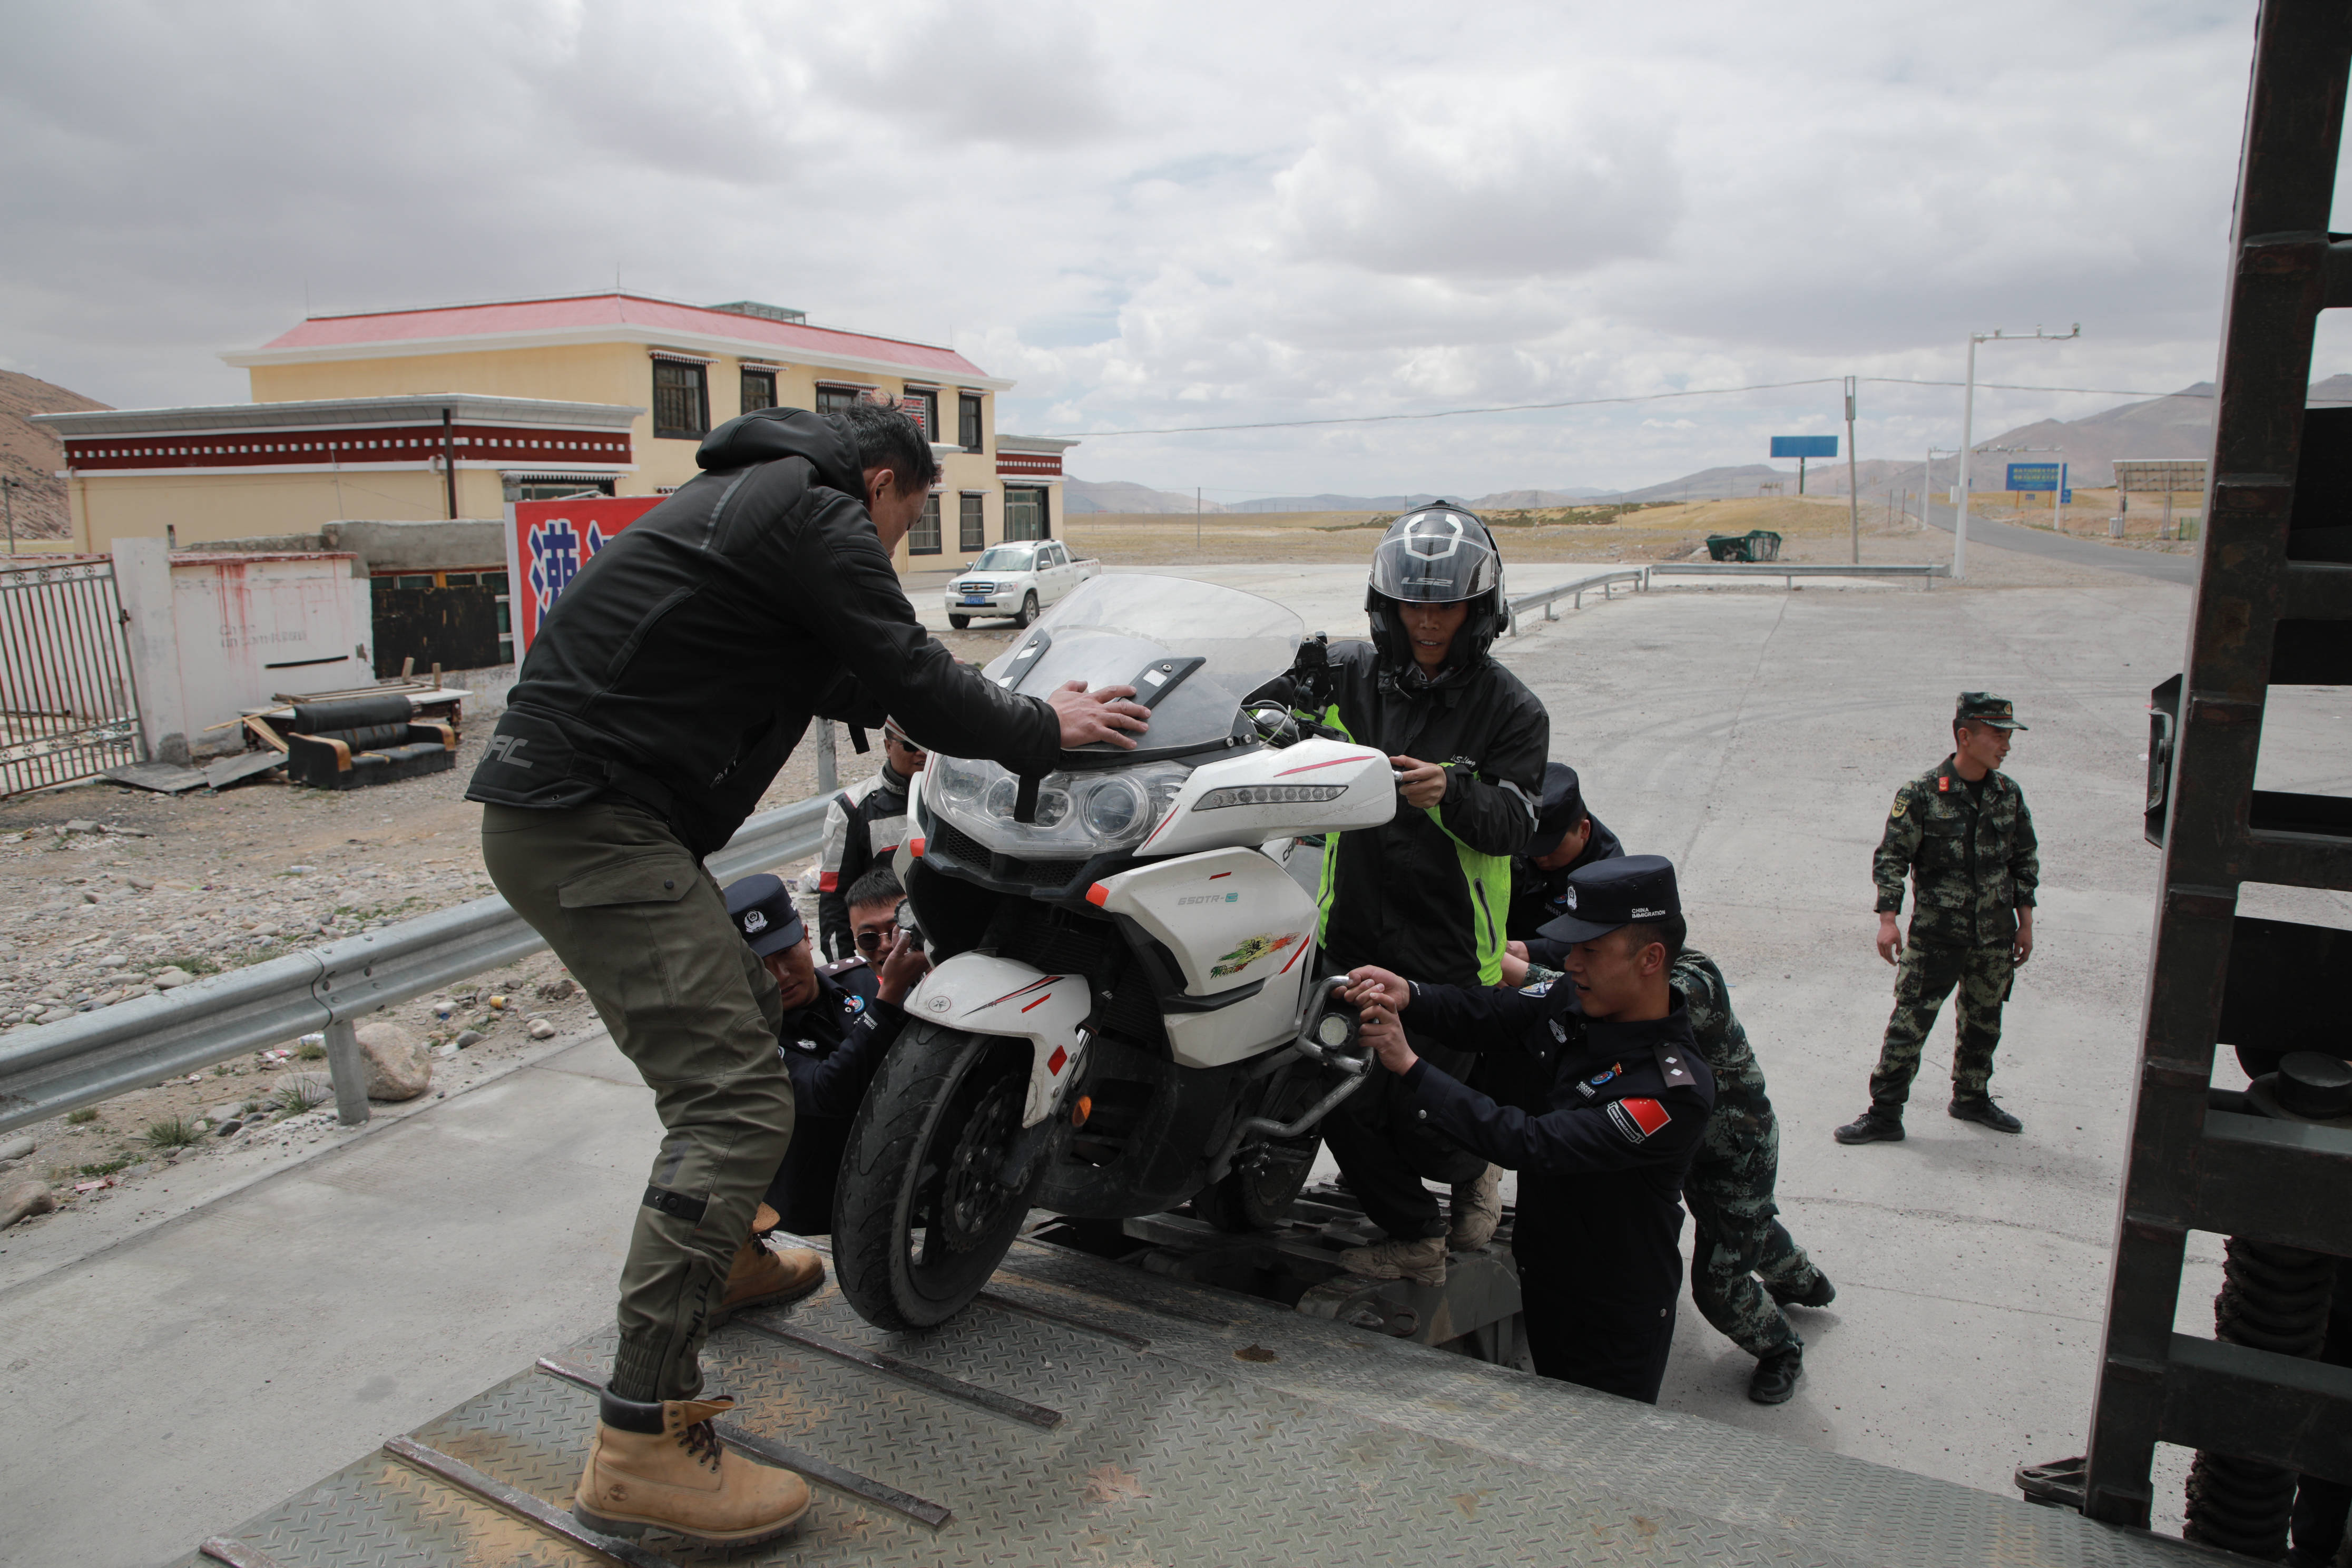 和被采访者在救援现场偶遇 ——西藏马攸桥边境检查站救援被困摩托车